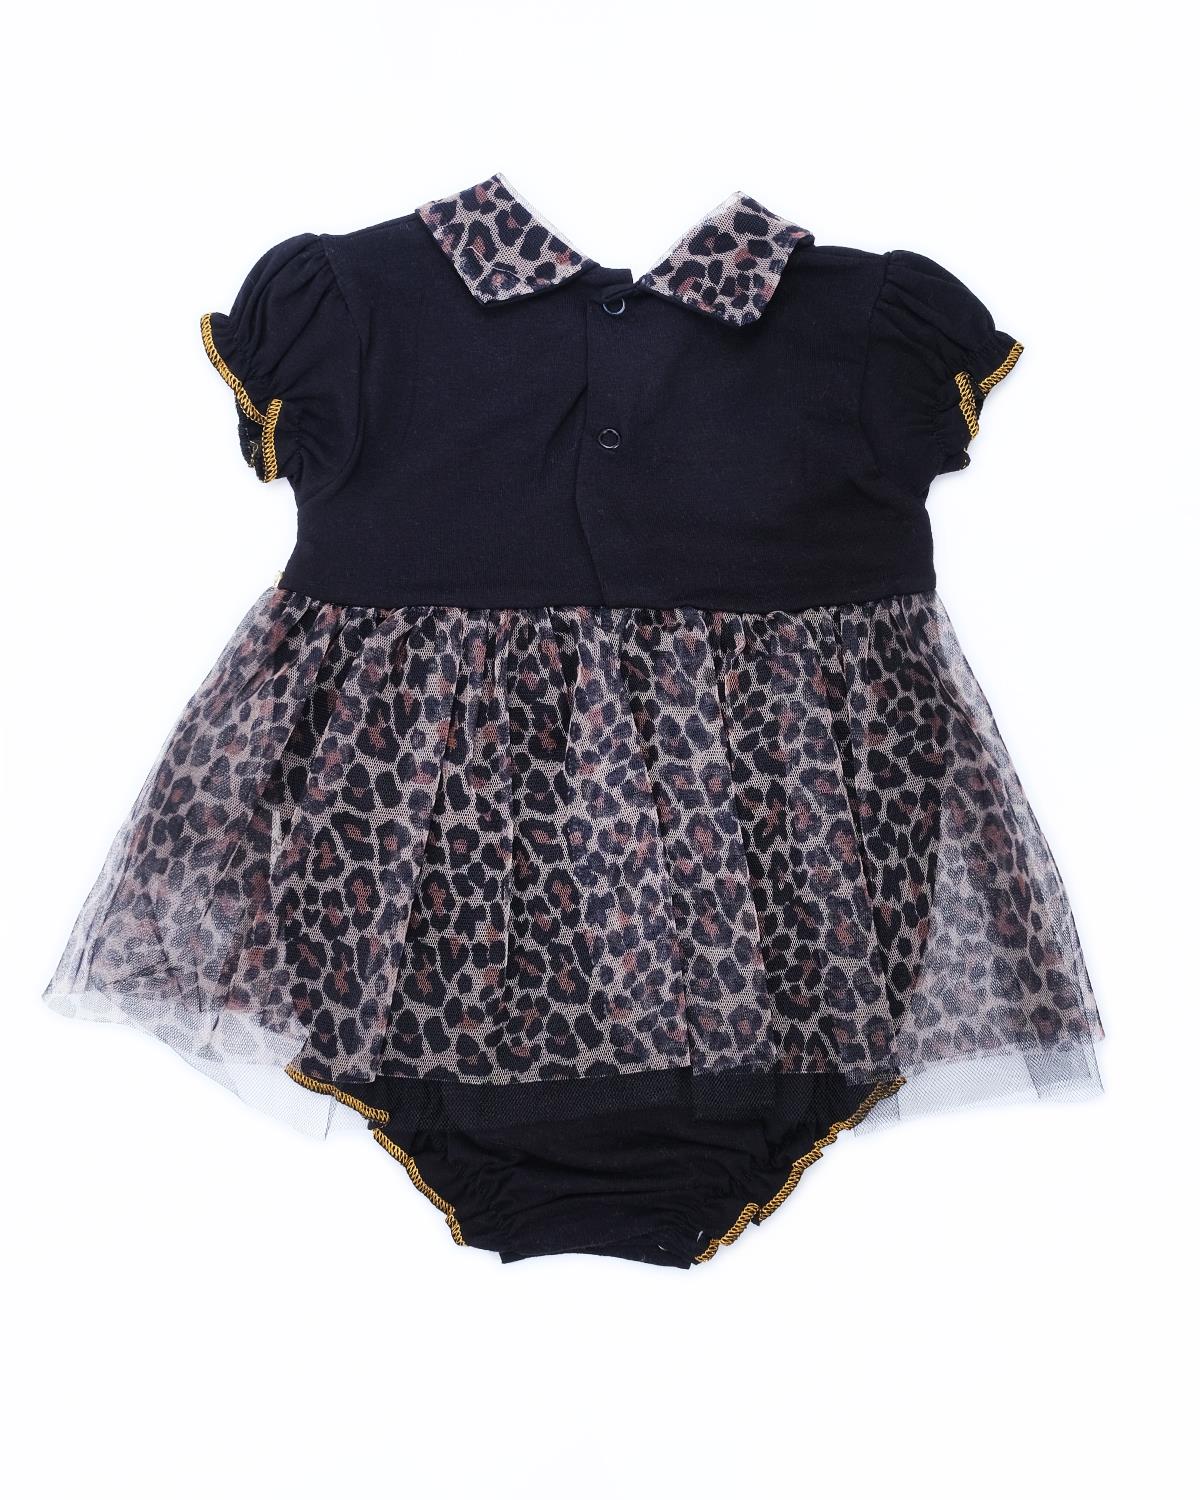 Kız Bebek Çocuk Leopar Desenli Puanlı Tüllü Çıtçıtlı Body Elbise